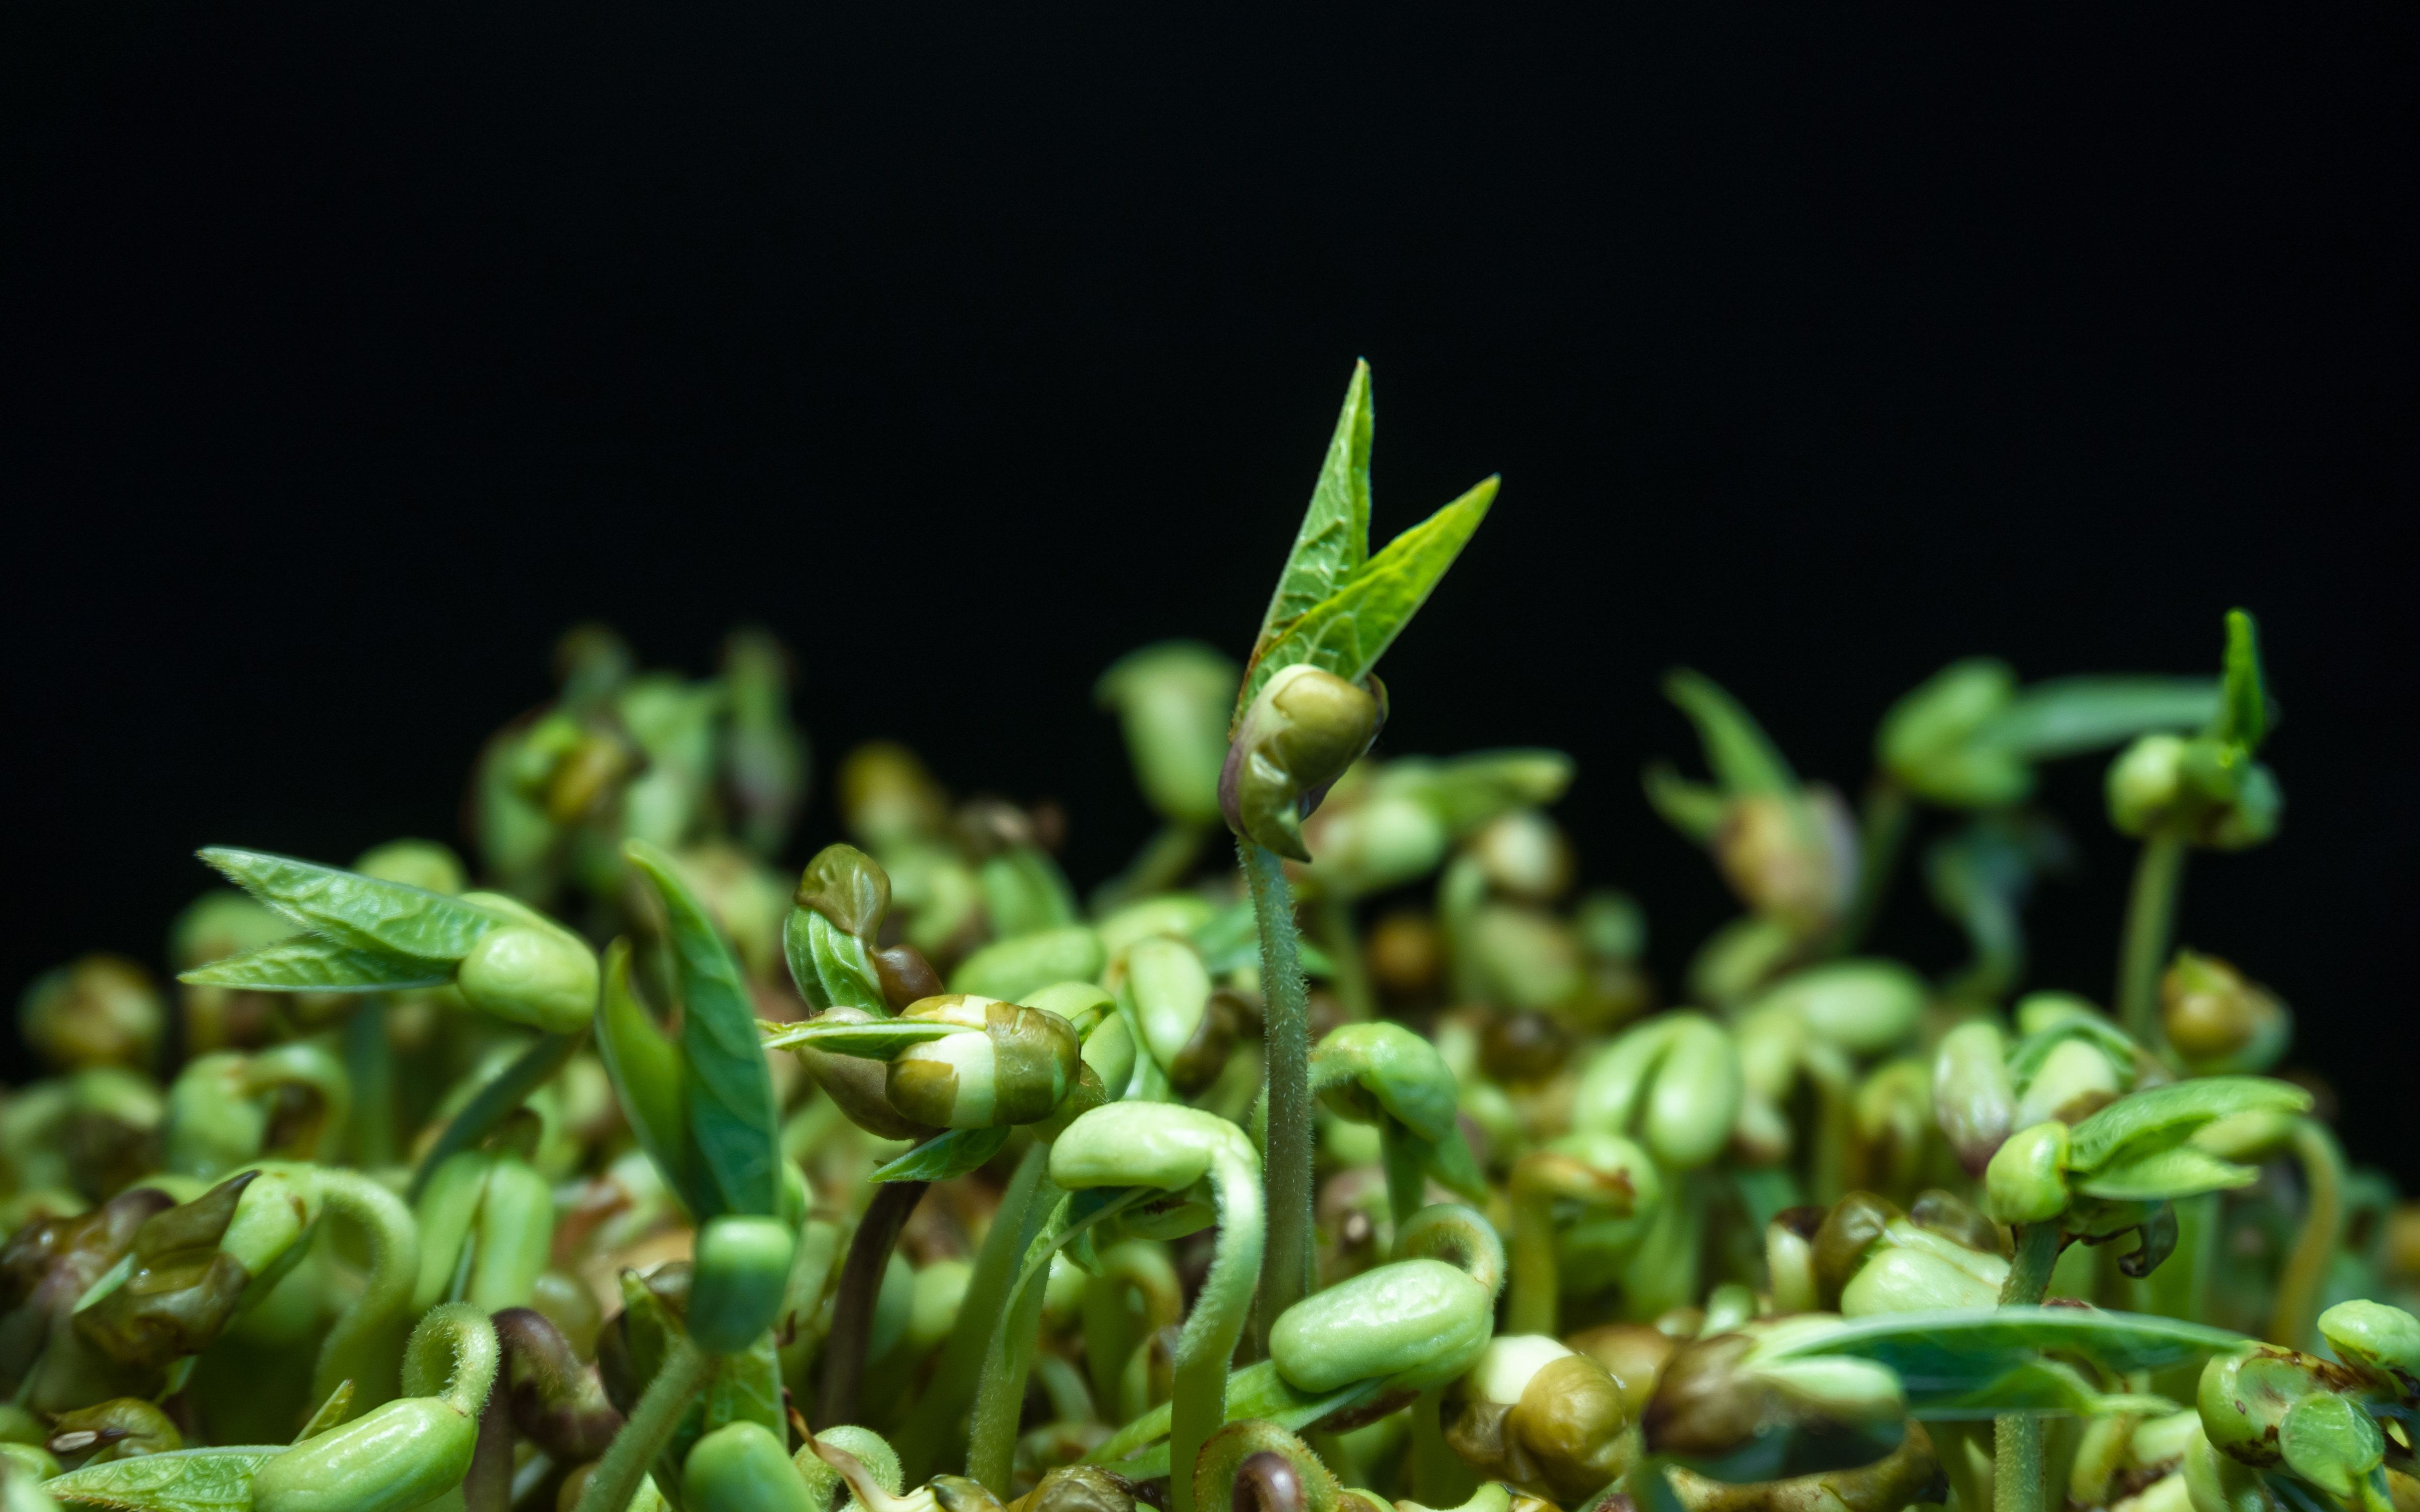 绿豆种子发芽过程图片-图库-五毛网